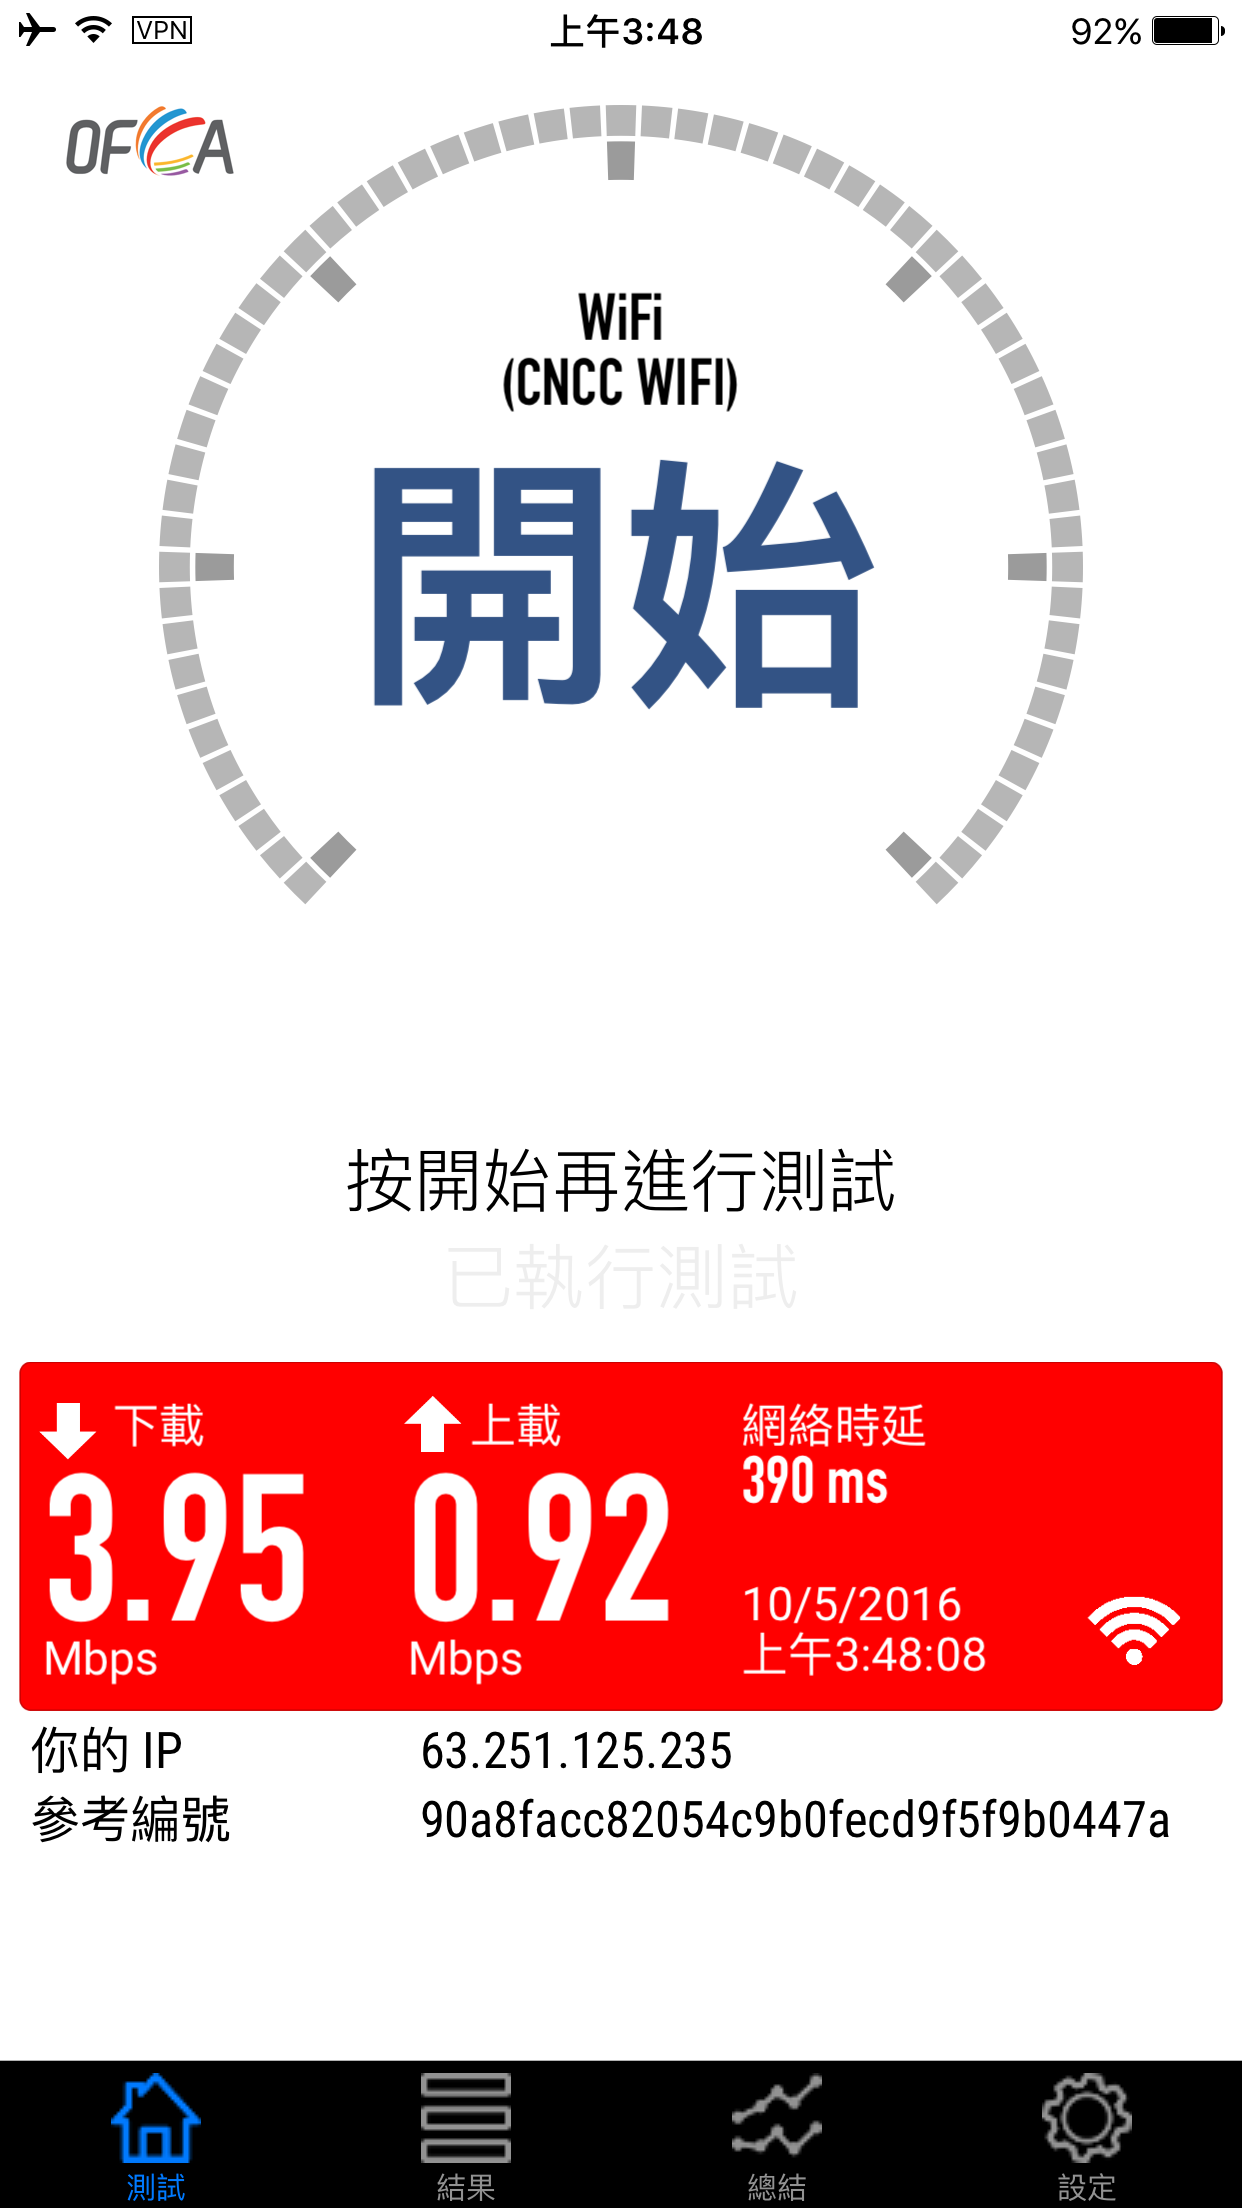 北上翻墙必备!Opera 推出免费 VPN 北京试用+